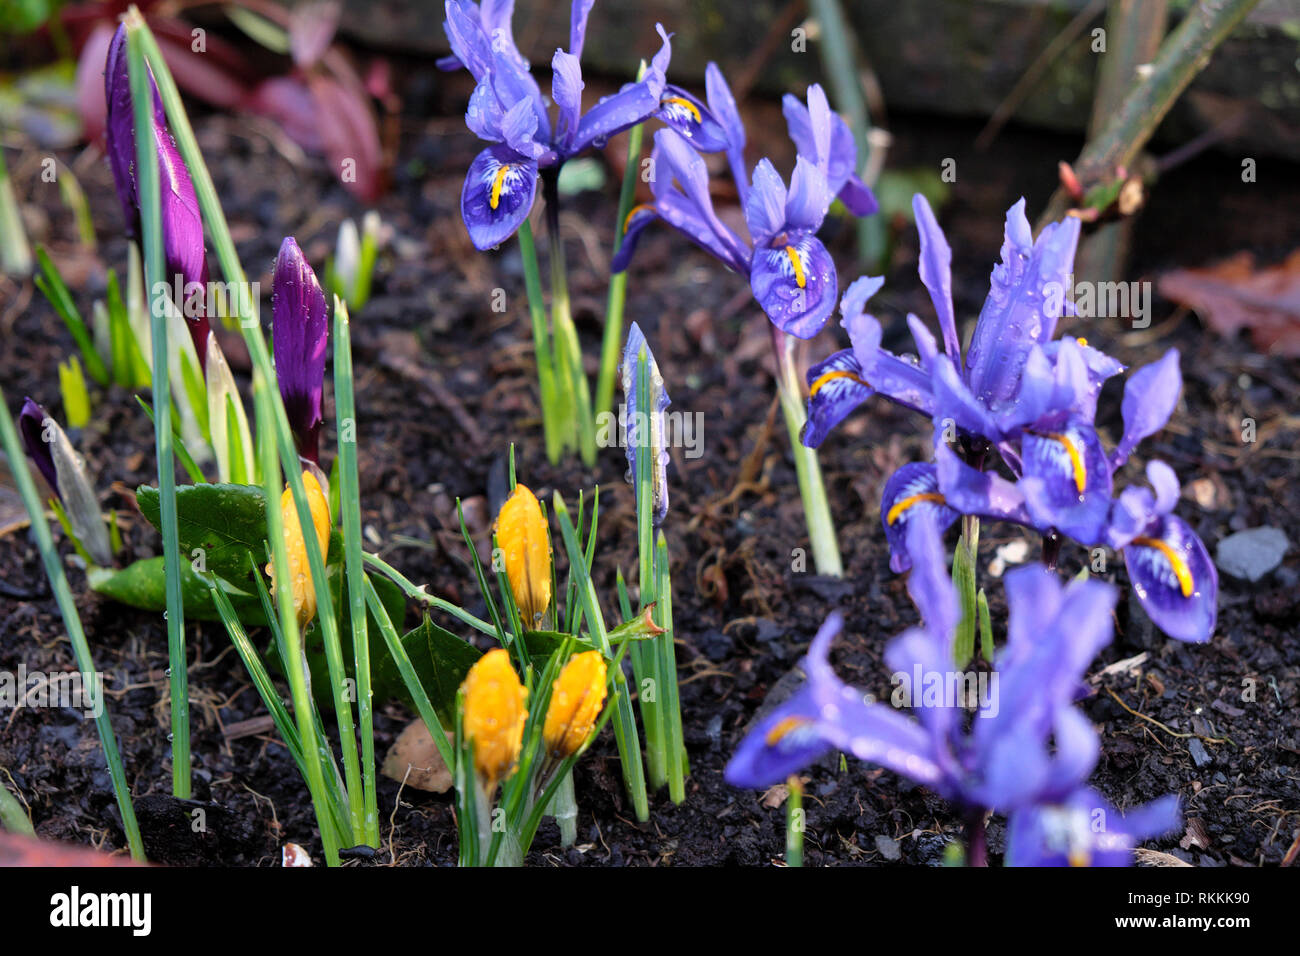 Bulbes printanières de l'iris réticulata en fleur avec des fleurs de crocus jaunes qui poussent dans un grand conteneur de semoir dans un jardin en février Pays de Galles Royaume-Uni KATHY DEWITT Banque D'Images